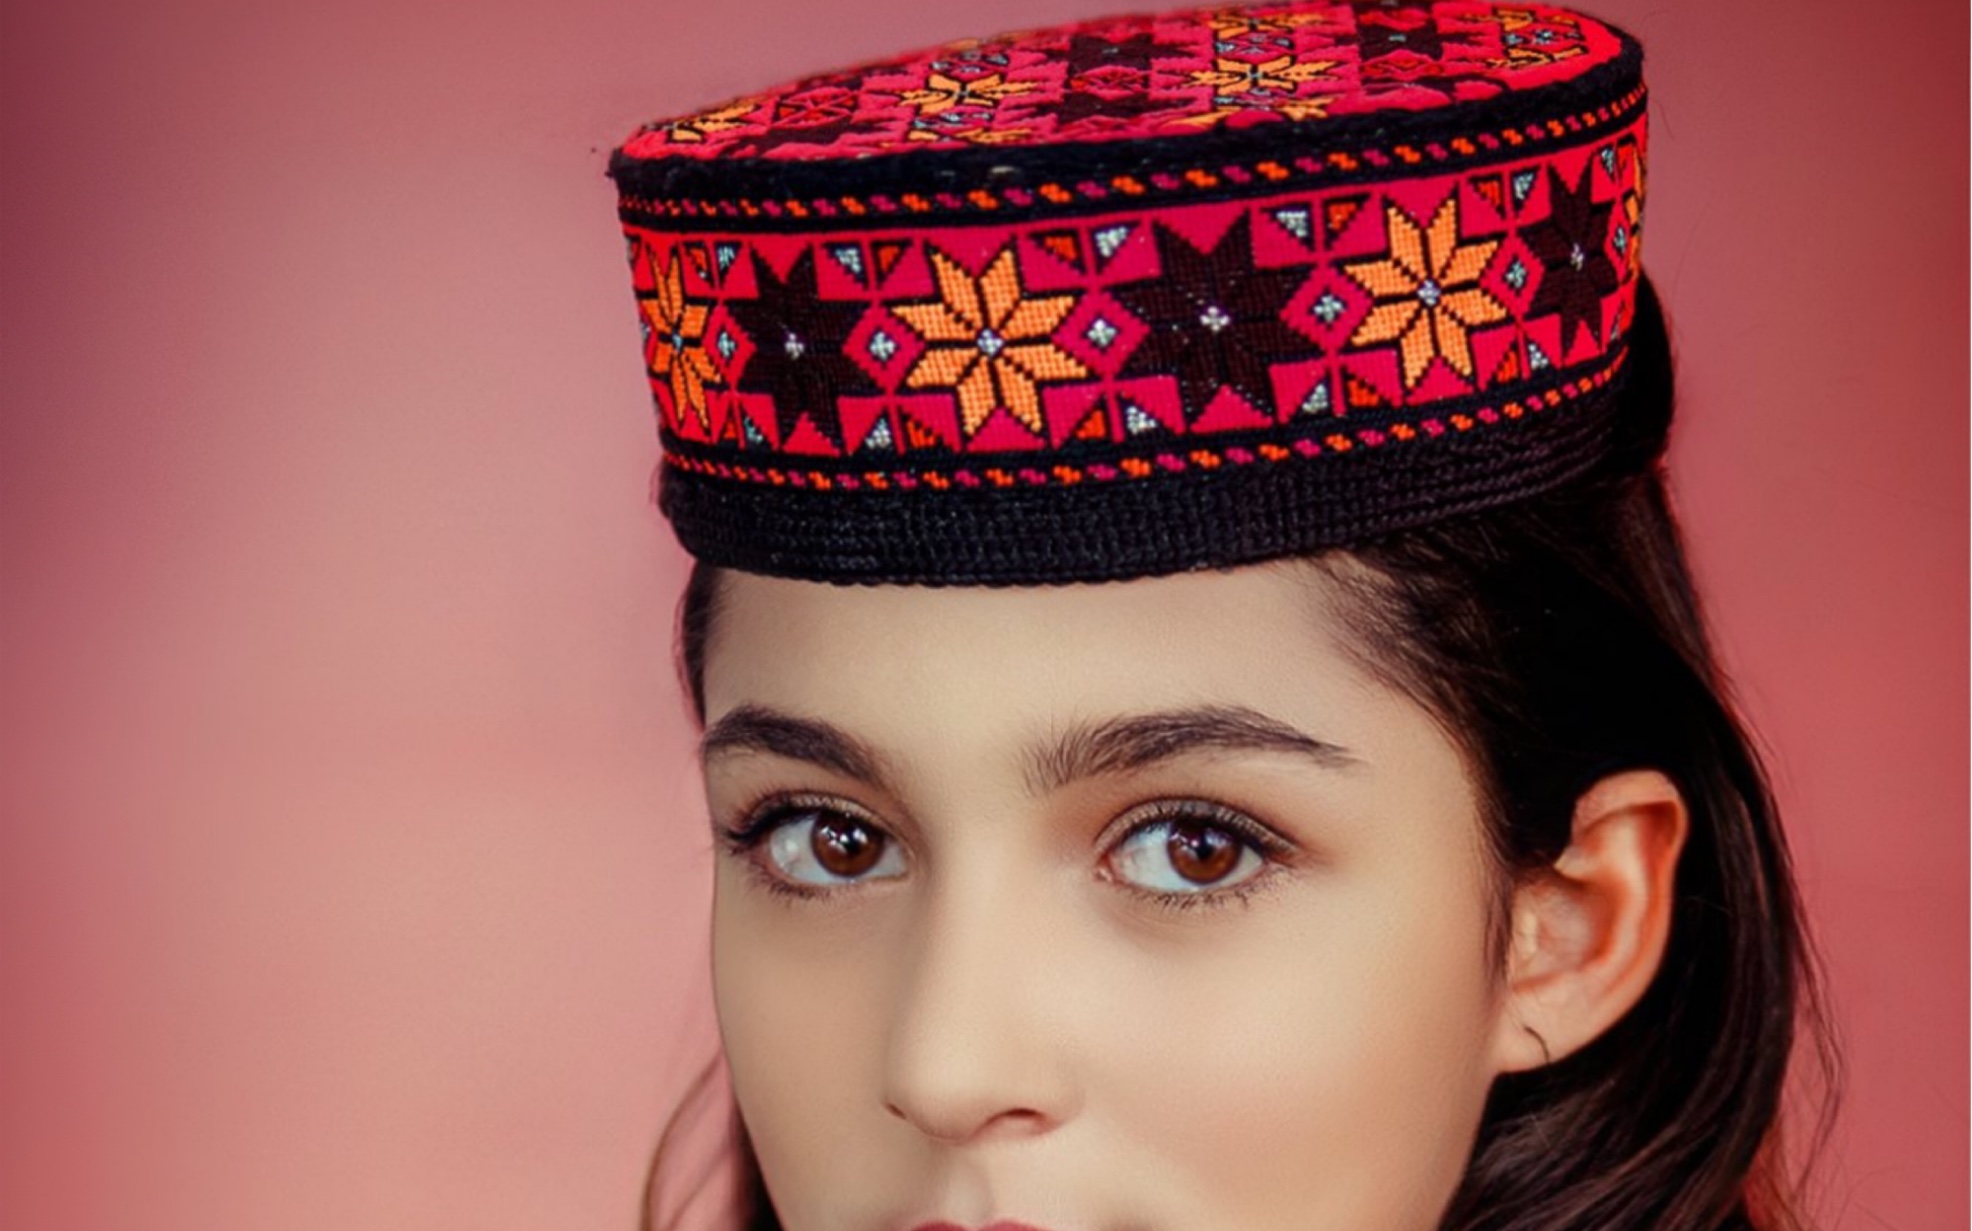 塔吉克斯坦女人图片图片